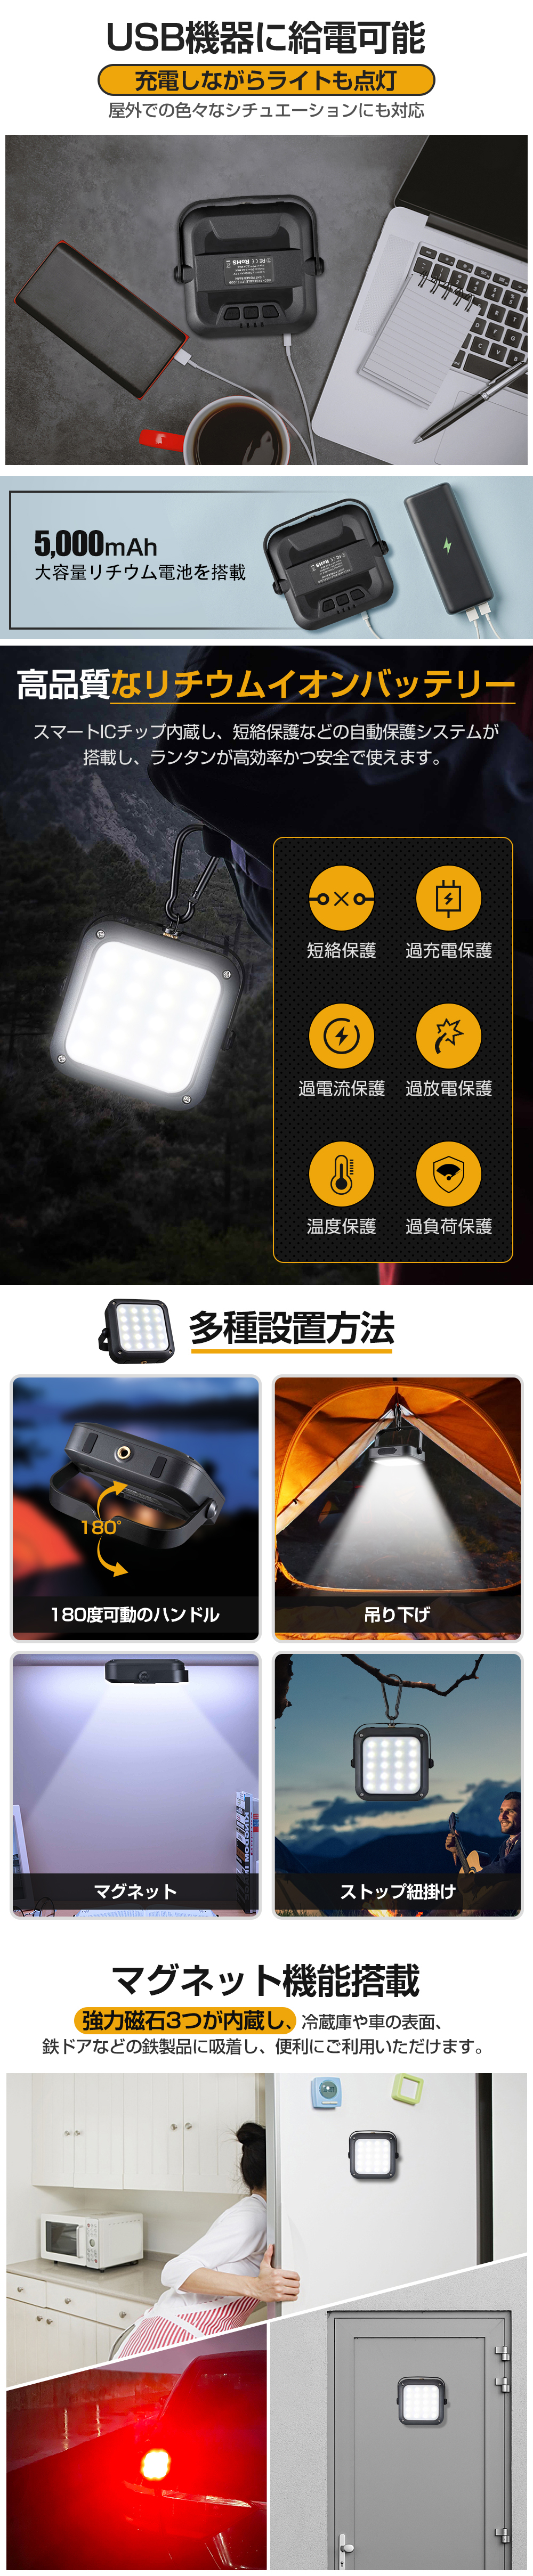  ランタン led 充電式 USB 充電 5000mAh 大容量 LEDランタン アウトドア キャンプ用品 懐中電灯 